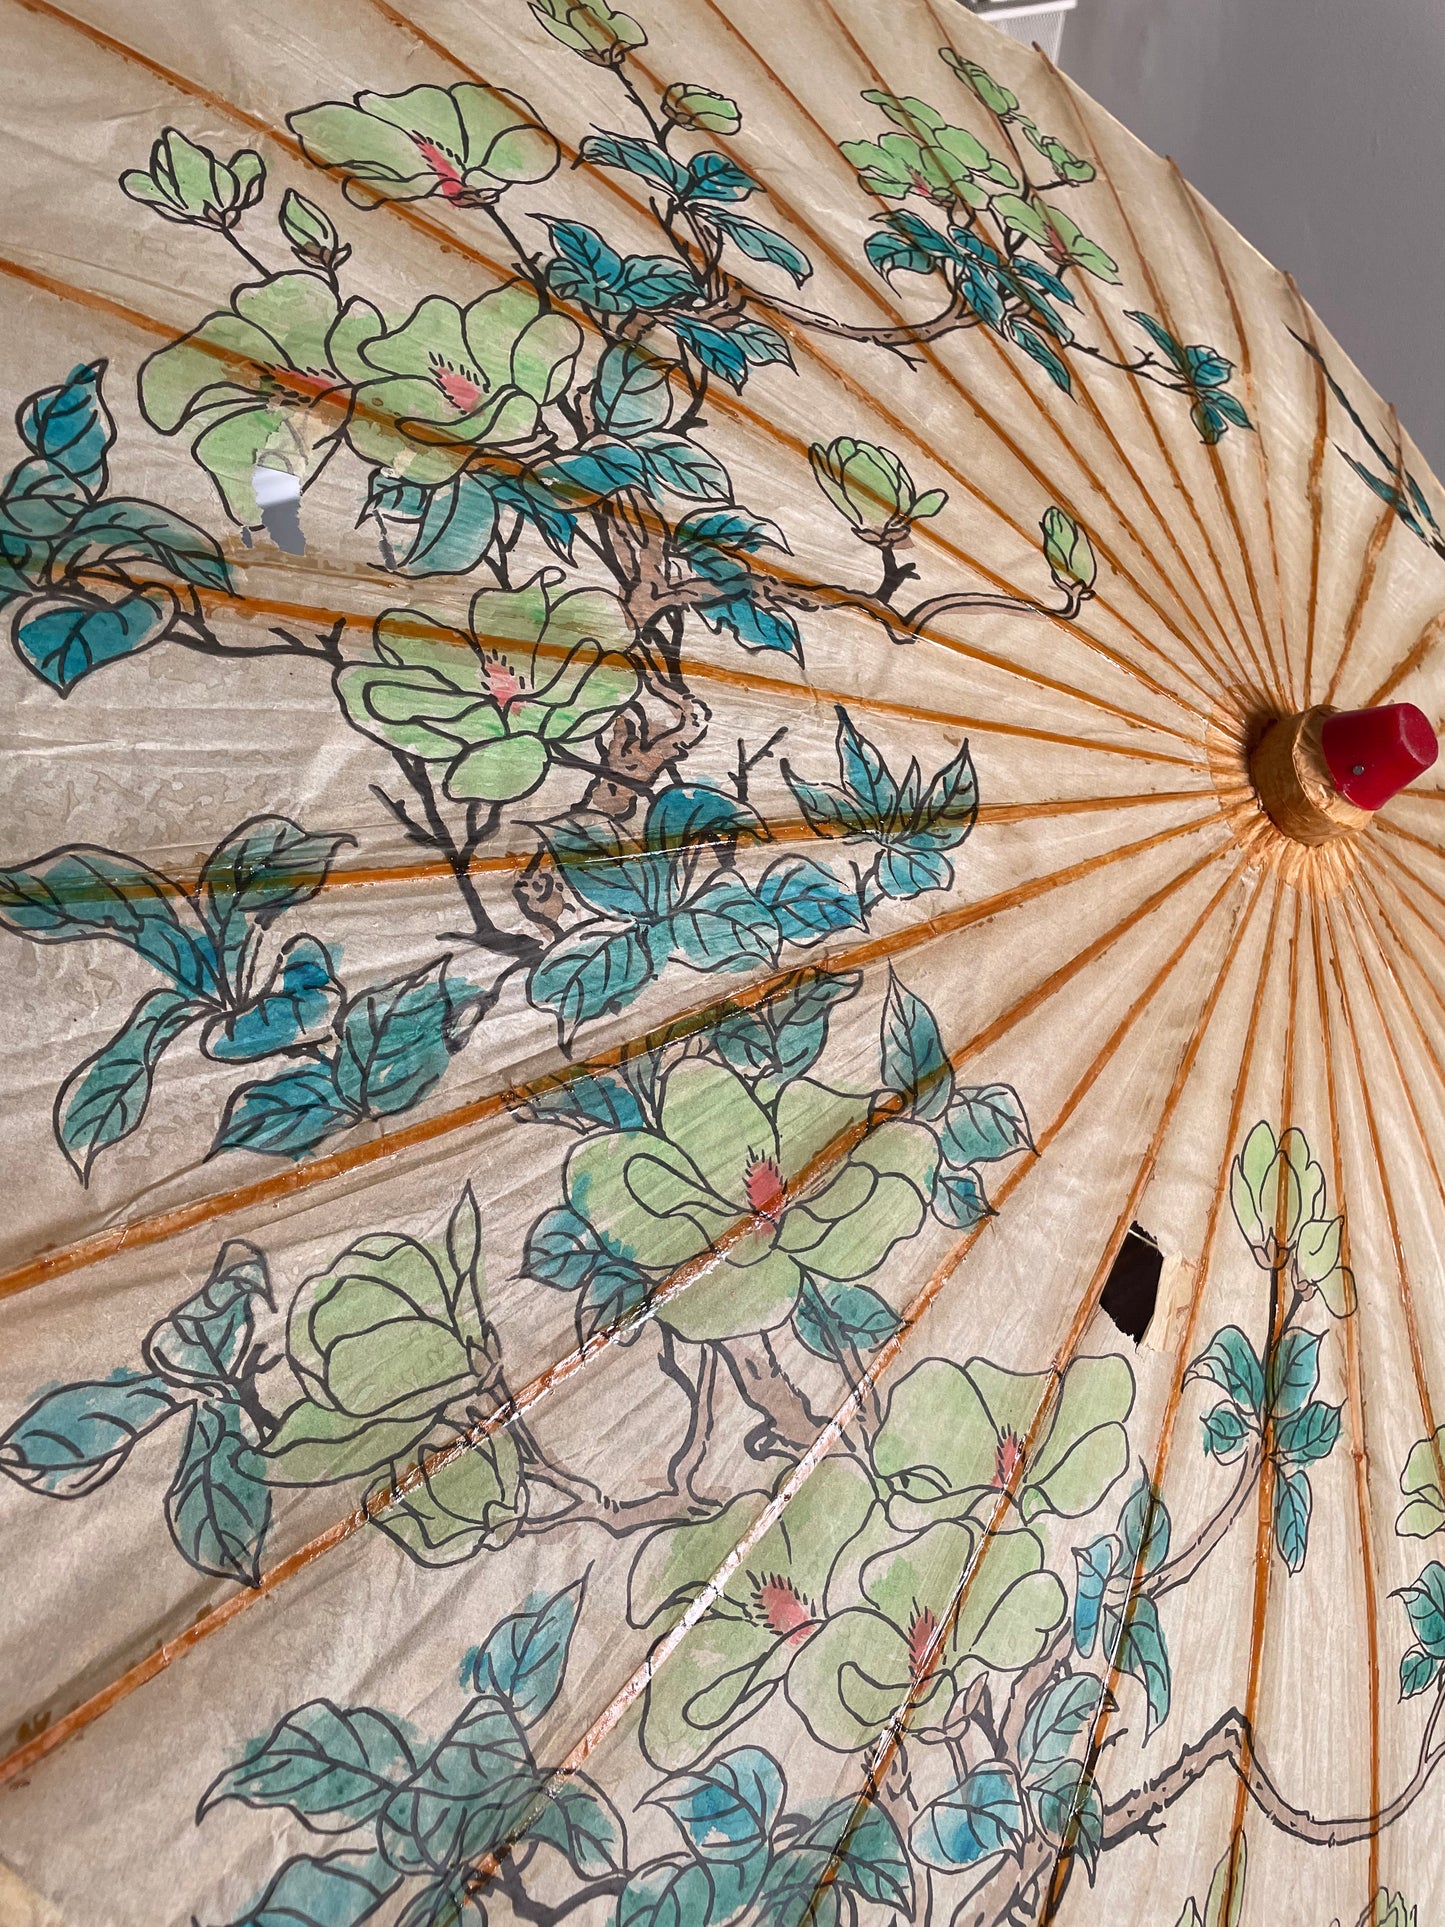 Antique Paper and Bamboo Umbrella